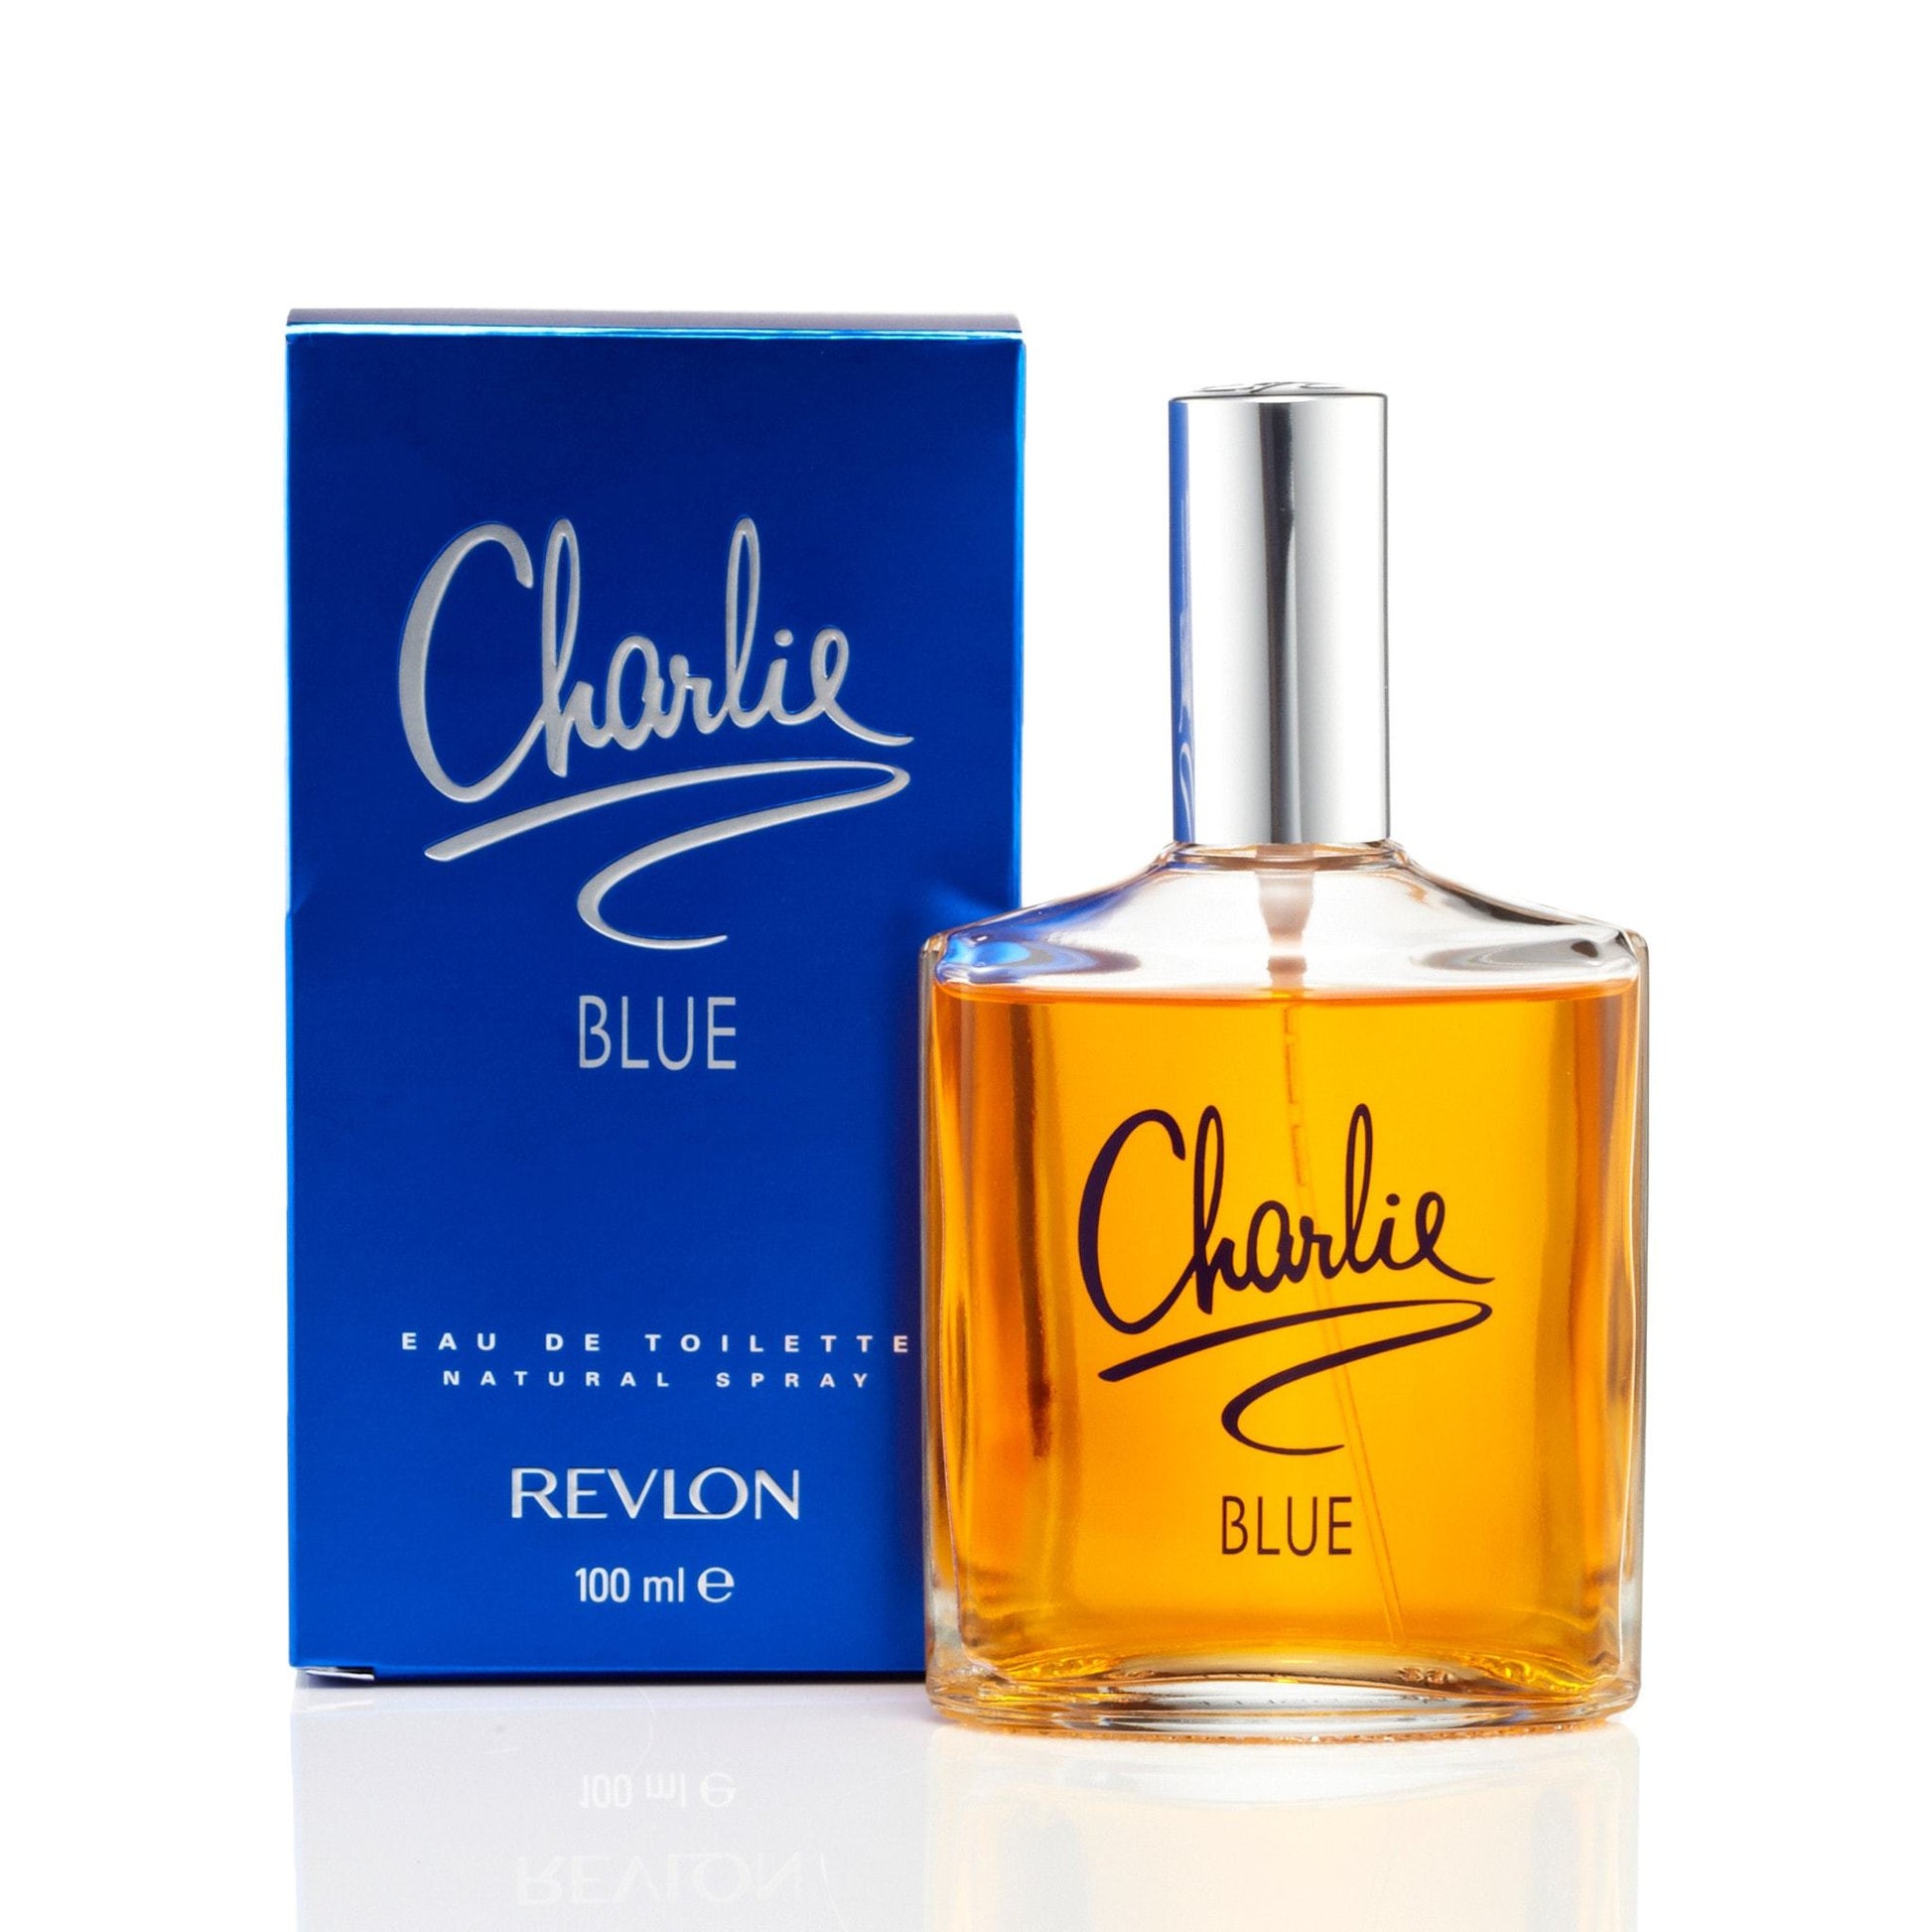 Charlie Blue Eau de Toilette Spray for Women by Revlon, Product image 2